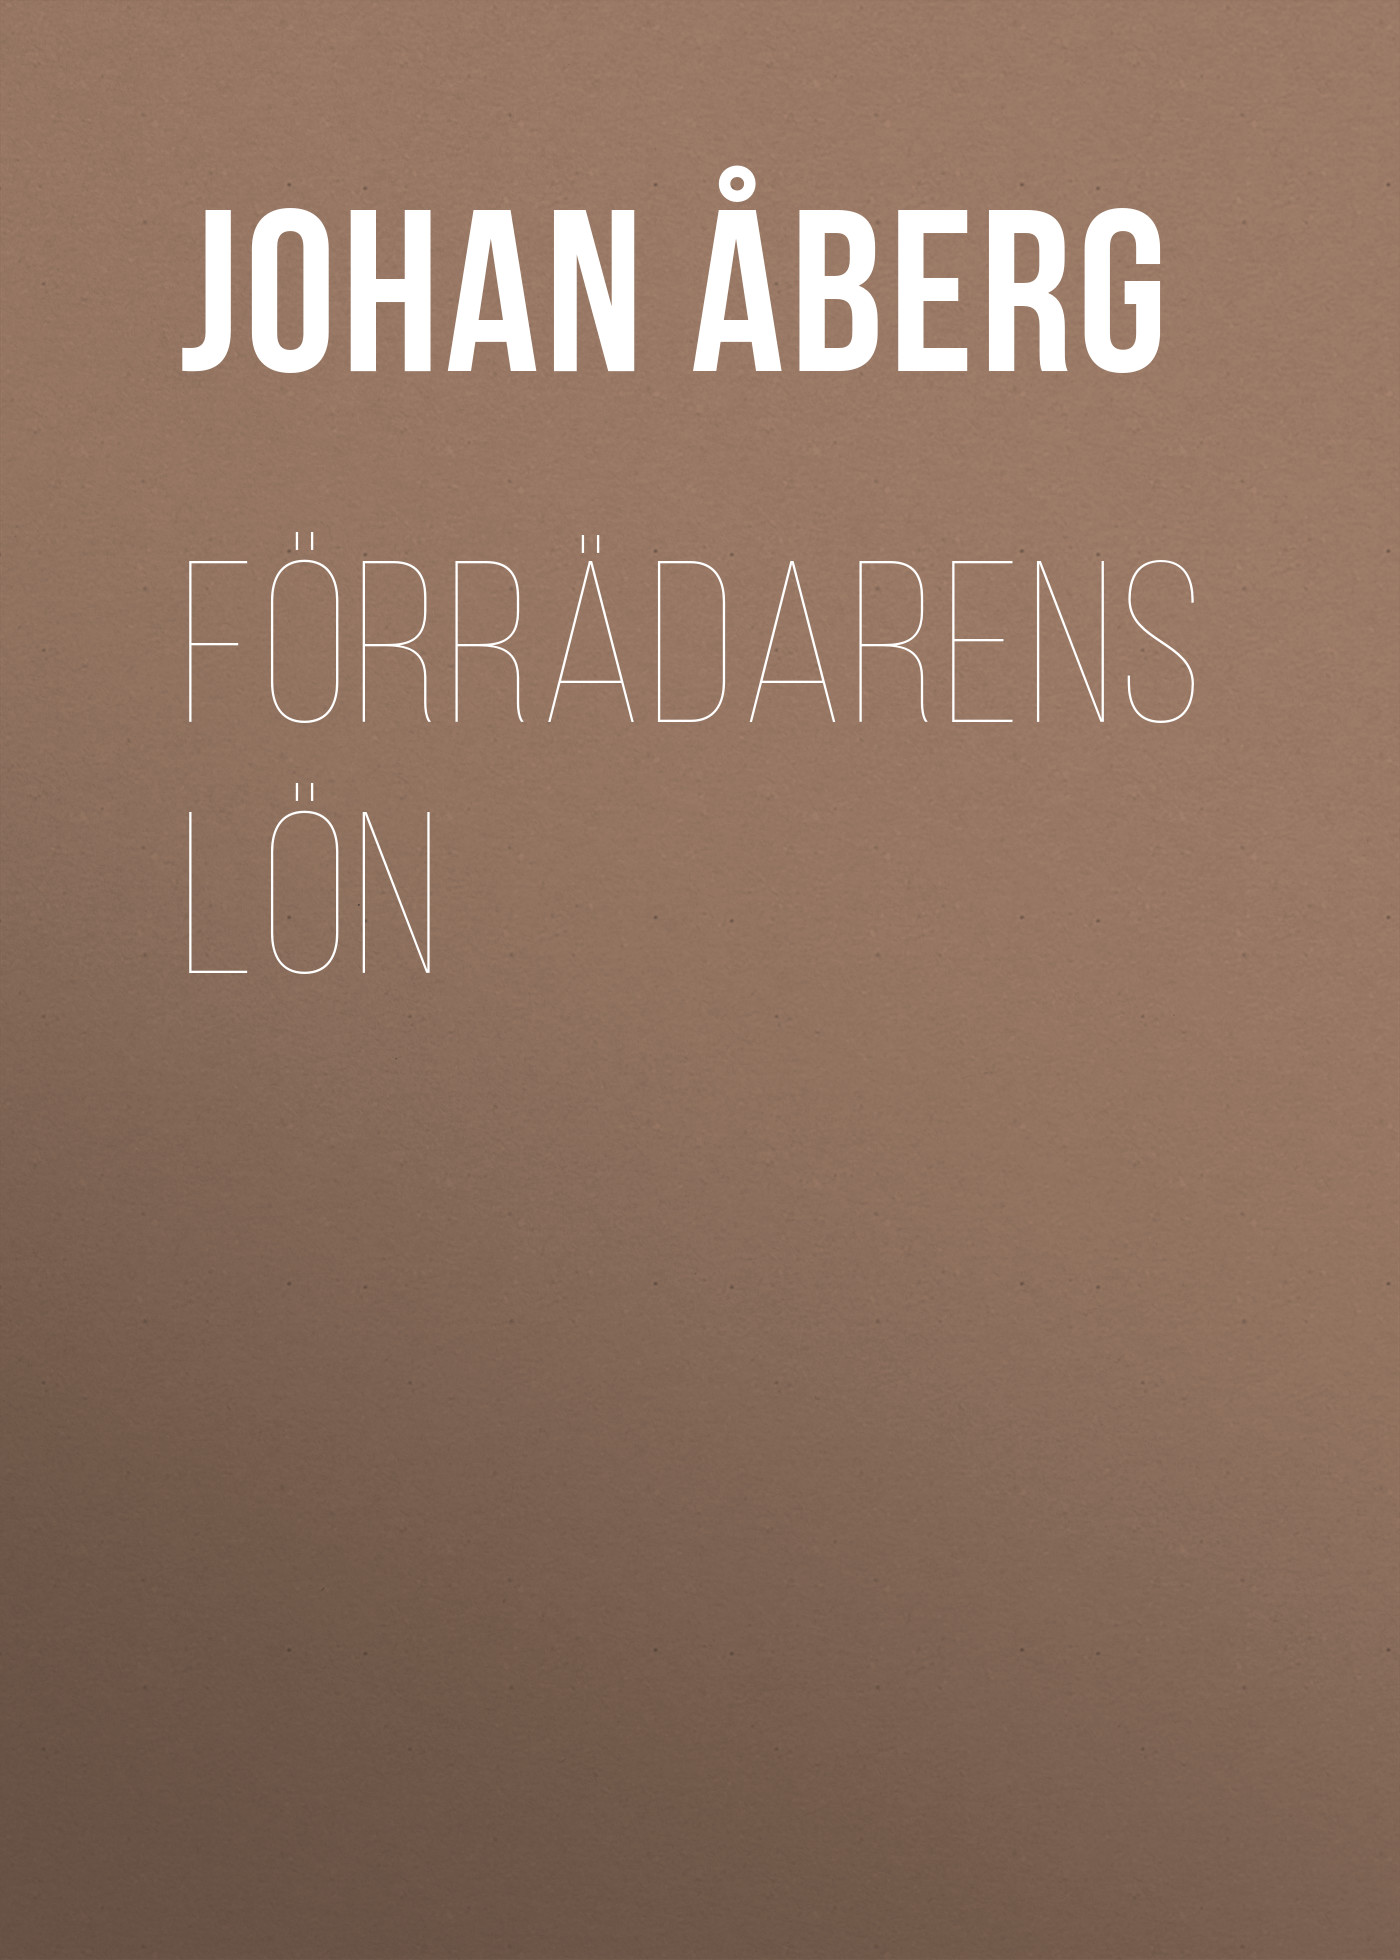 Книга Förrädarens lön из серии , созданная Johan Åberg, может относится к жанру Зарубежная старинная литература, Зарубежная классика. Стоимость электронной книги Förrädarens lön с идентификатором 24174852 составляет 5.99 руб.